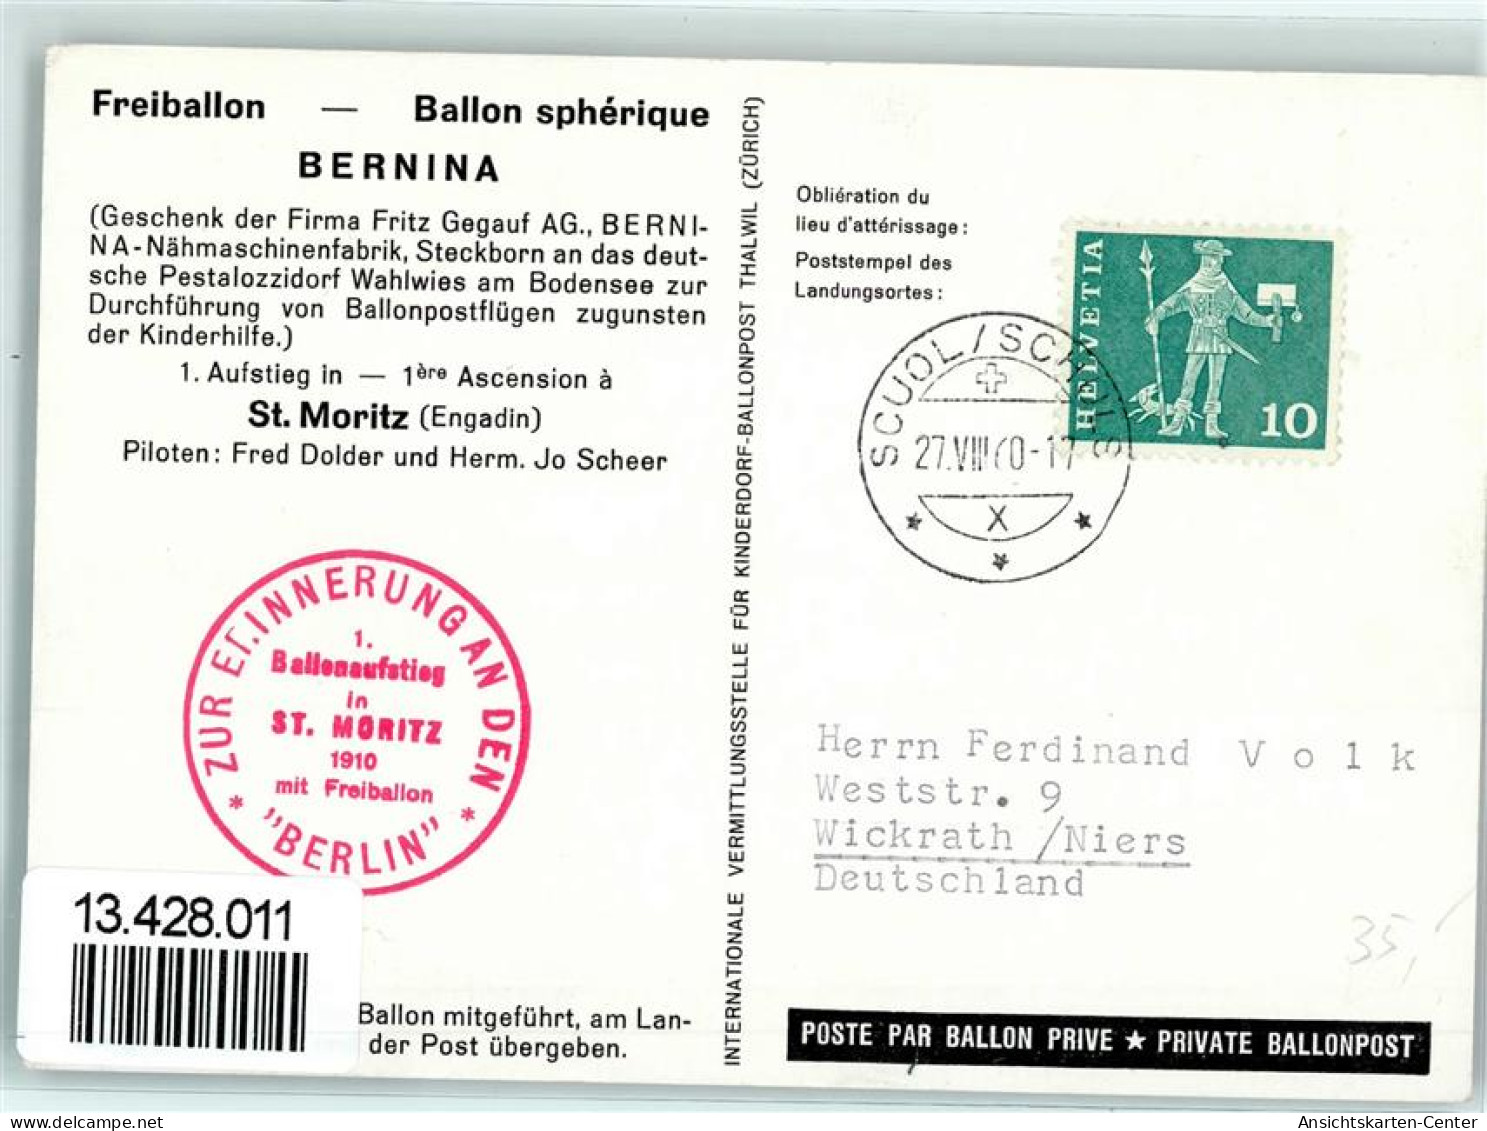 13428011 - Bernina  Erinnerung 1. Ballonaufstieg In St. Moritz  1910 - Fesselballons